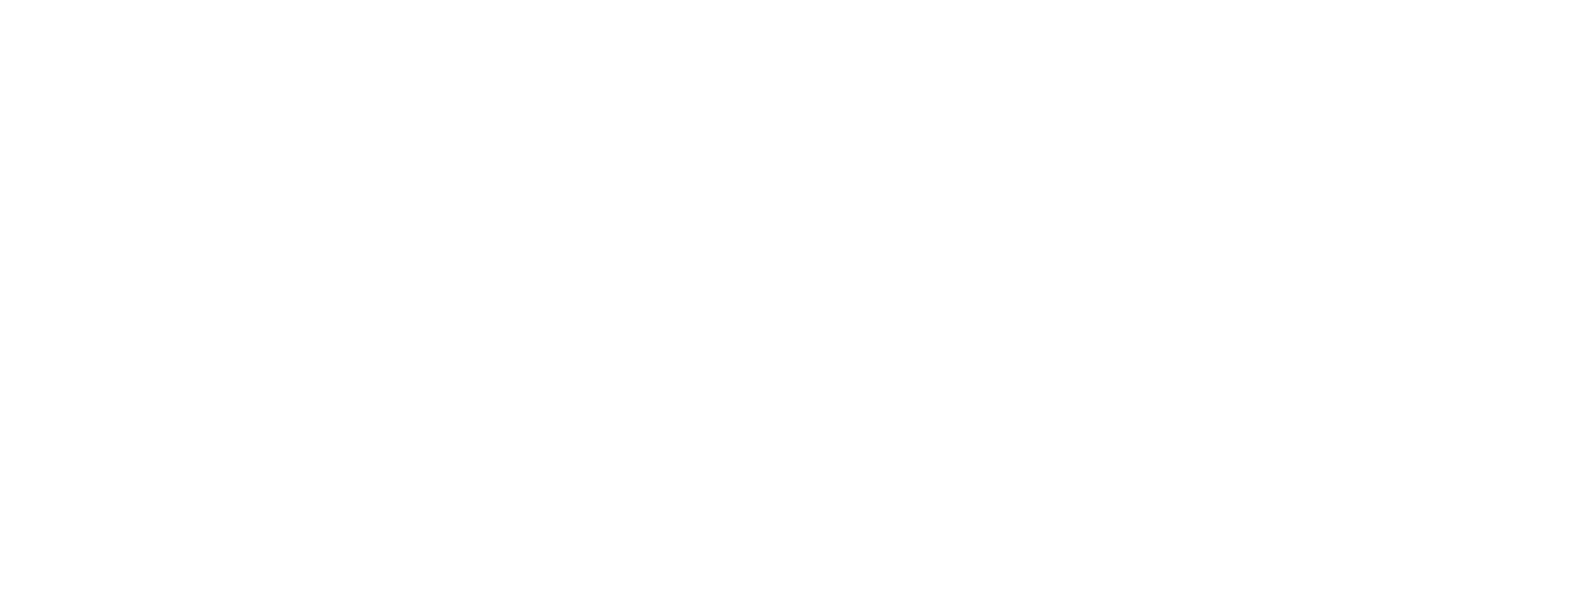 Delight Dental Spa Mascot, Sydney